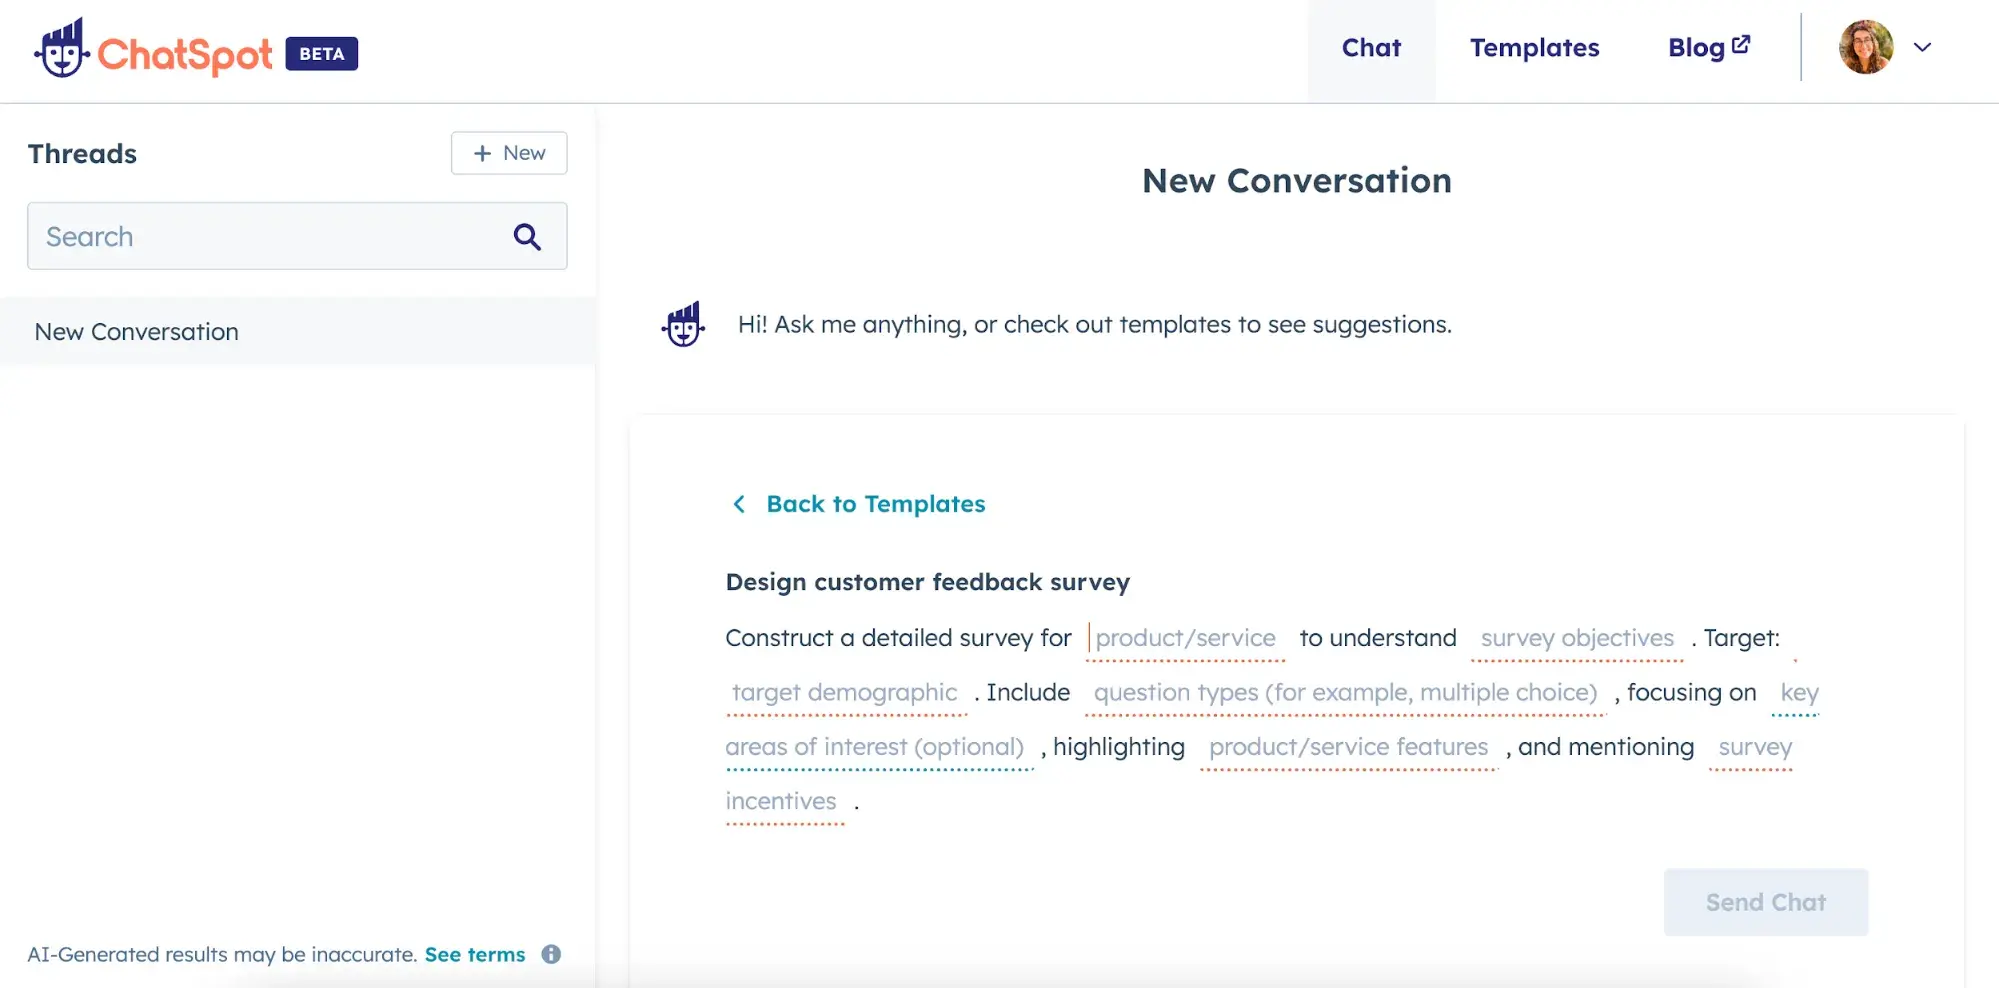 HubSpot ChatSpot customer survey template screenshot